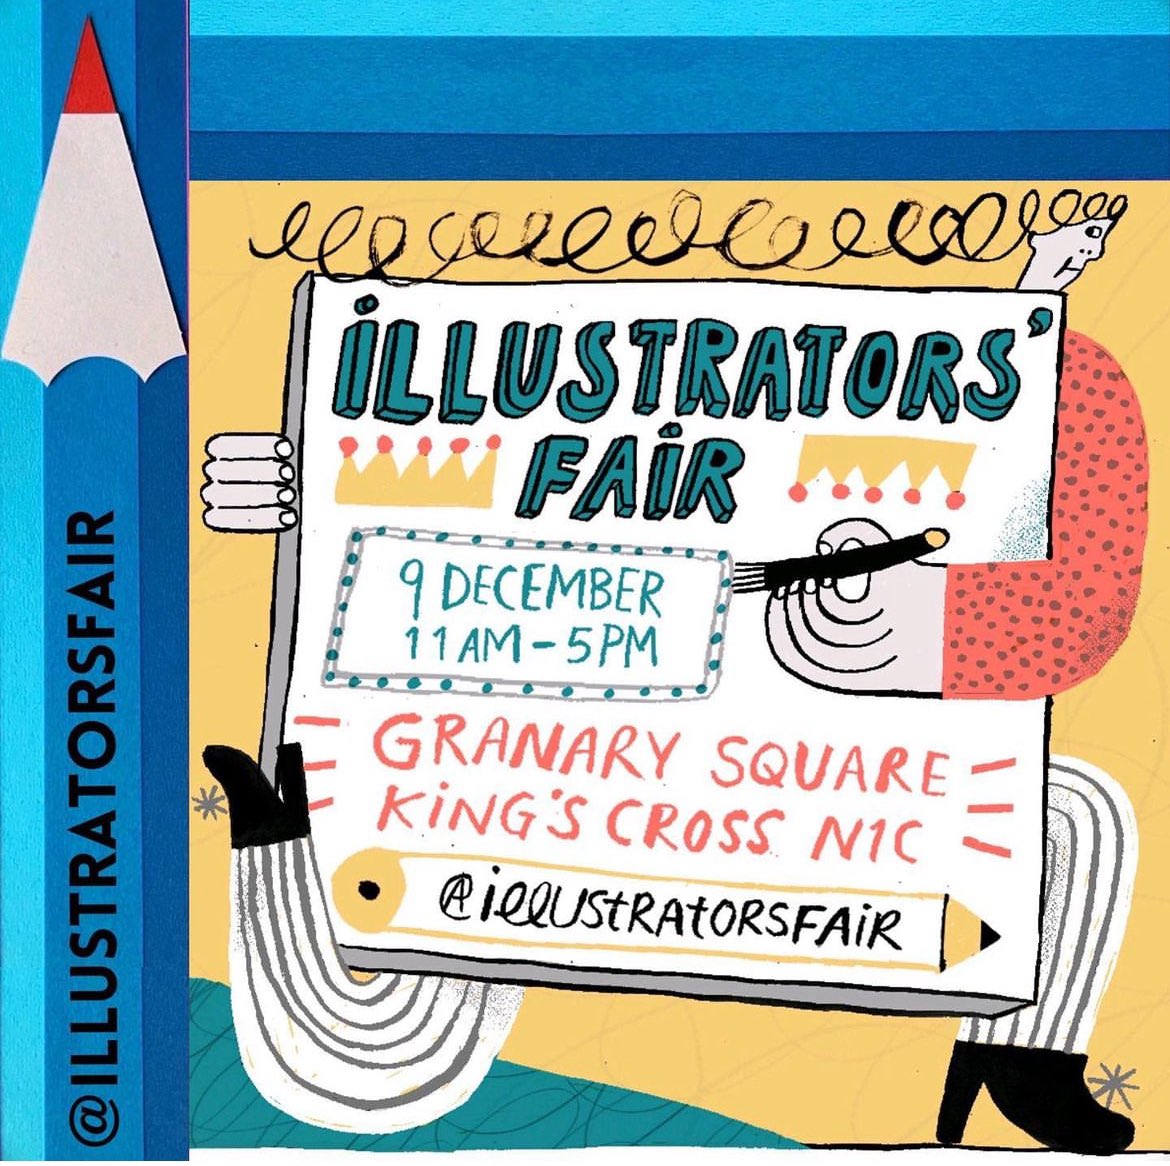 #illustratorsfair “A room full of talented illustrators -  5 days to go! #illustratorsfair @kingscrossN1C